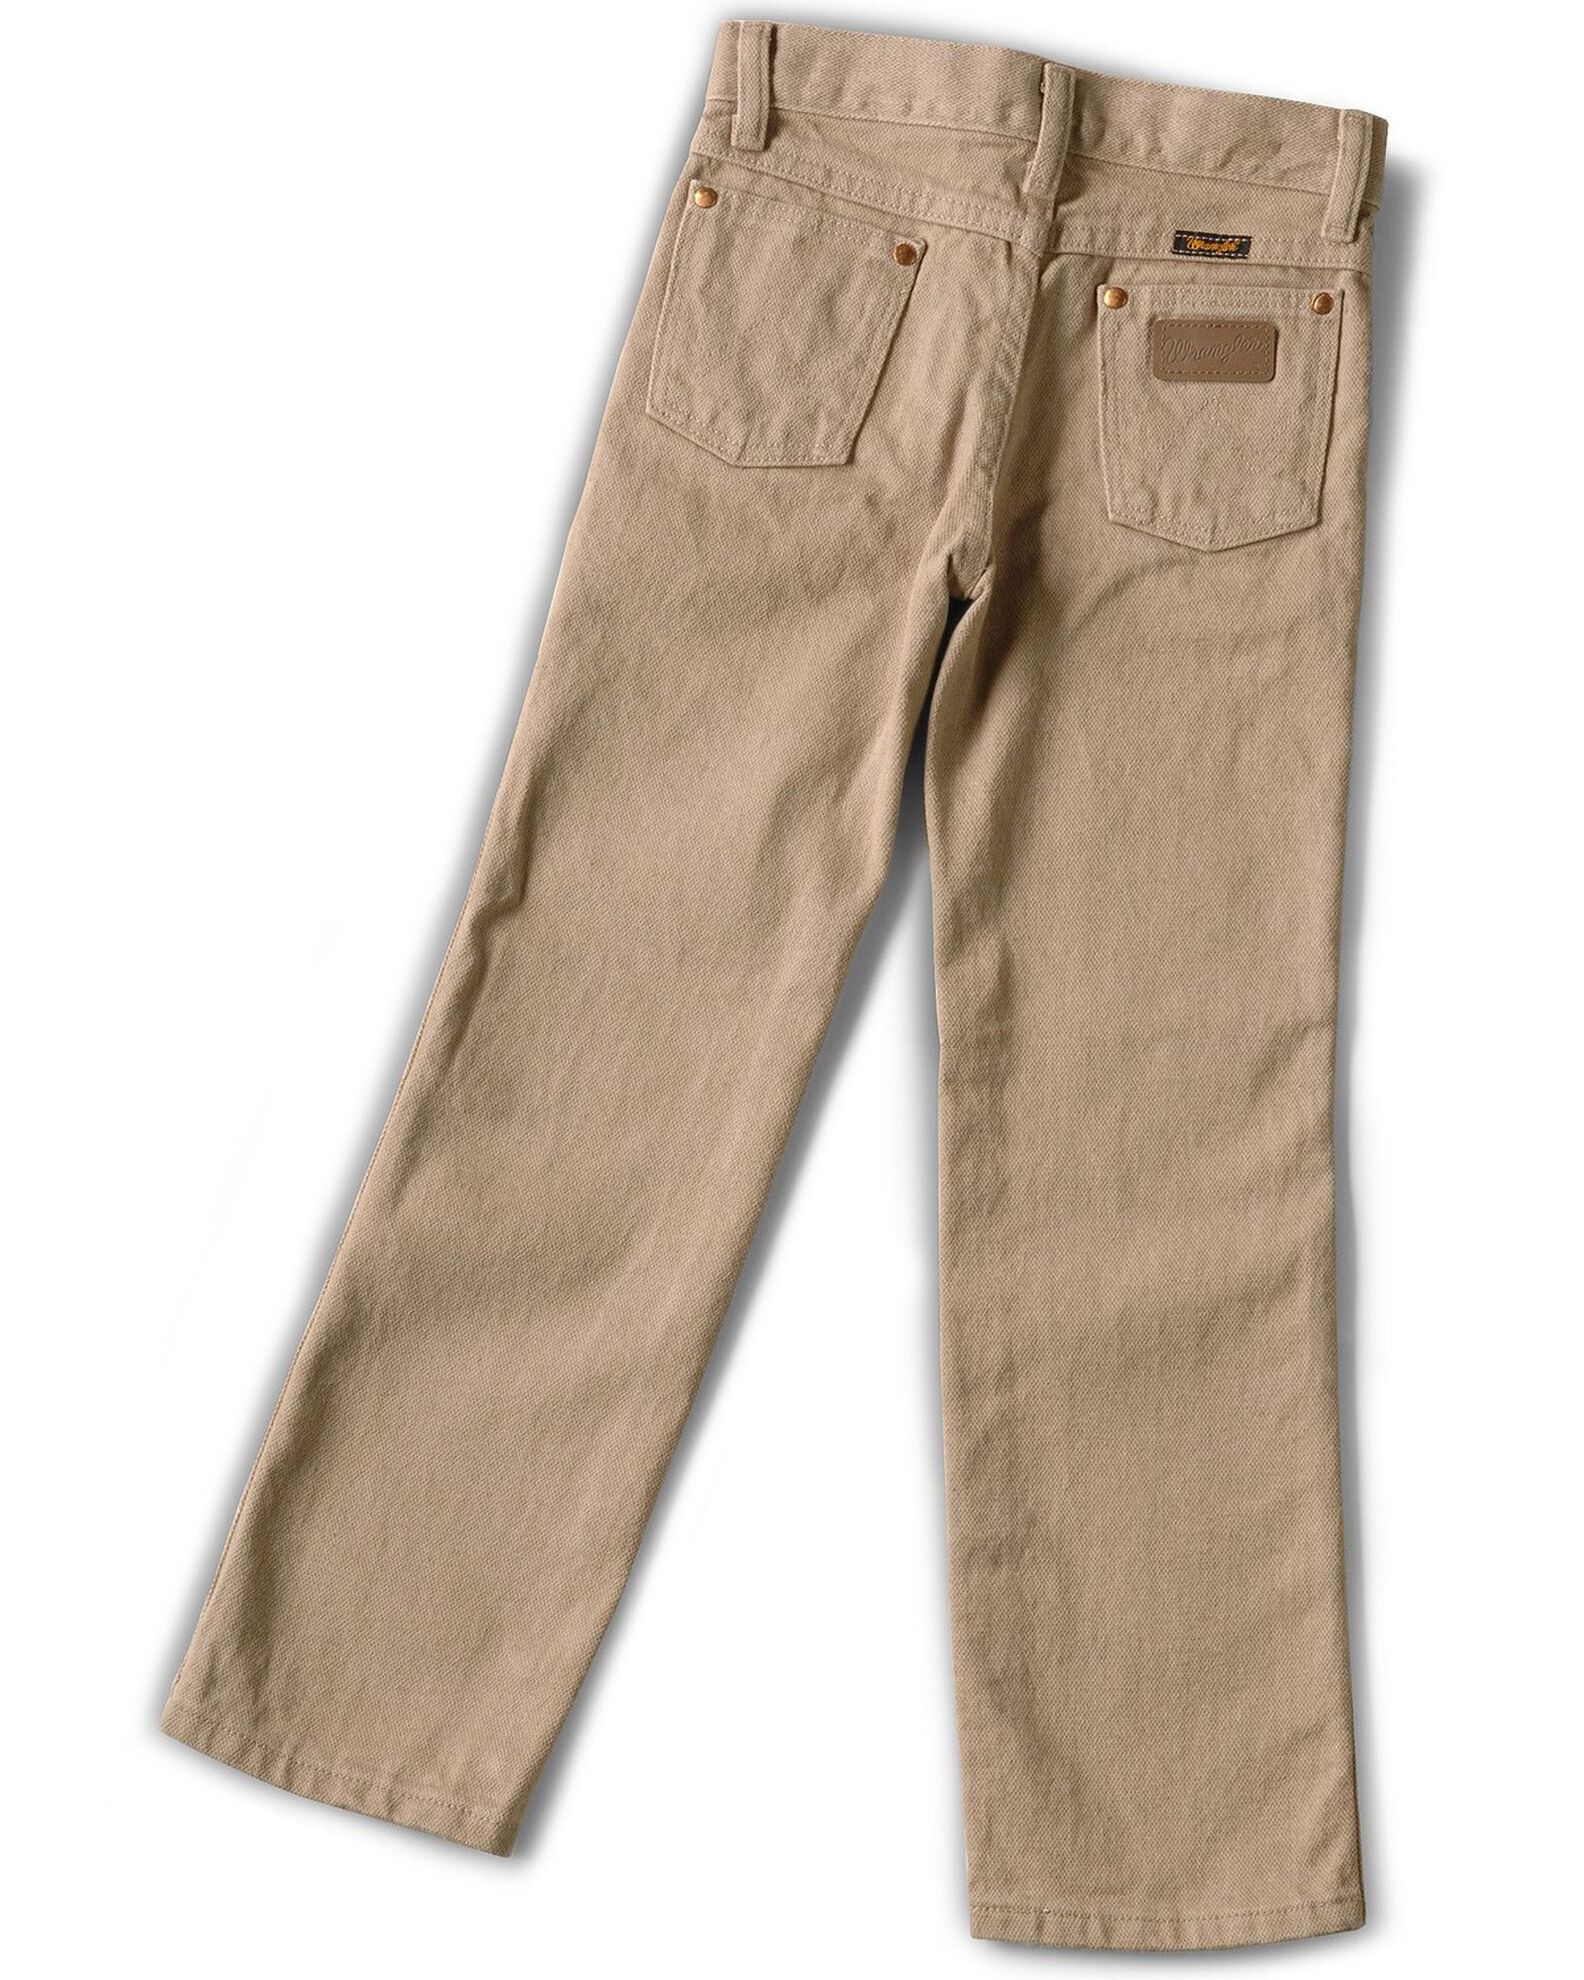 Wrangler Boys' ProRodeo Jeans Size 8-16 | Boot Barn